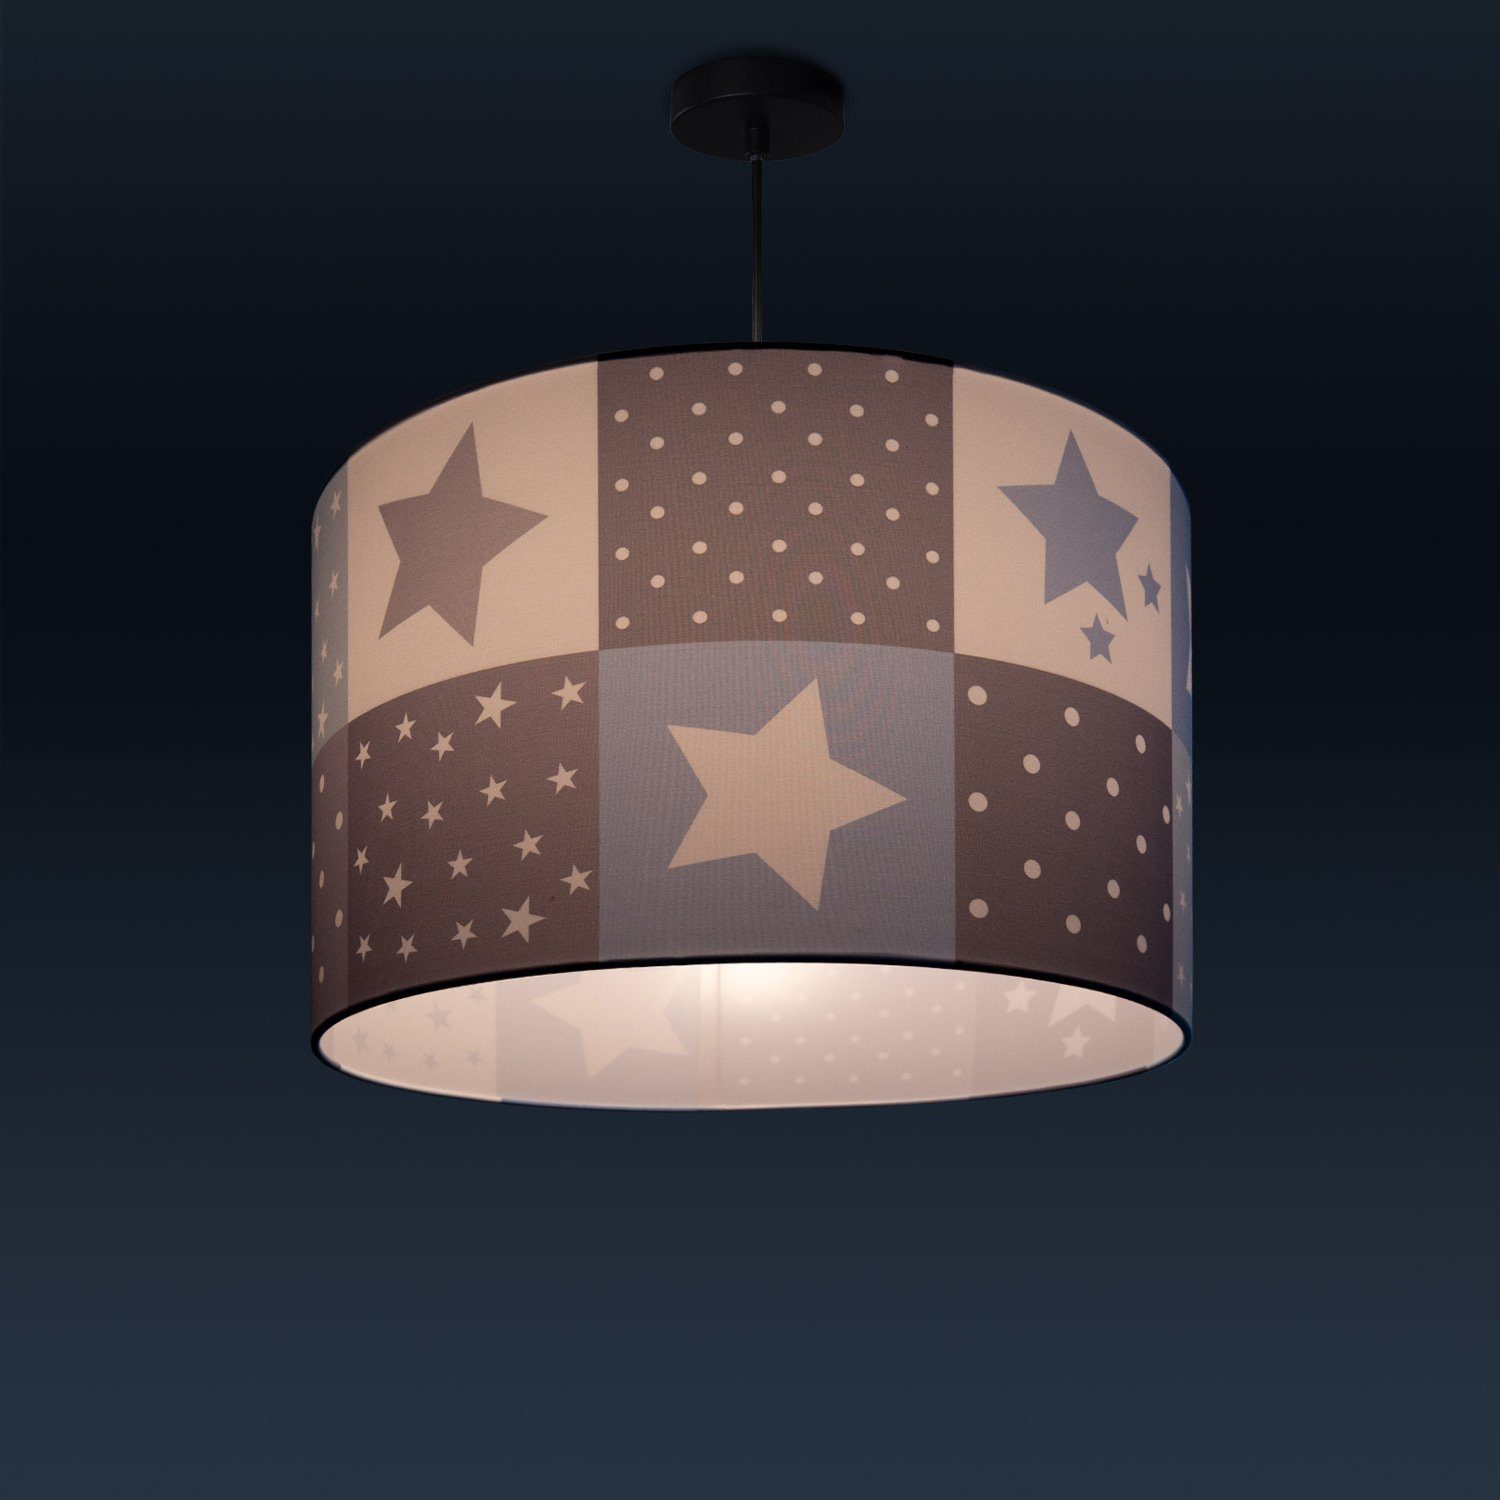 Deckenlampe Motiv Kinderzimmer Paco Leuchtmittel, LED E27 ohne Sternen Home Cosmo Lampe 345, Pendelleuchte Kinderlampe